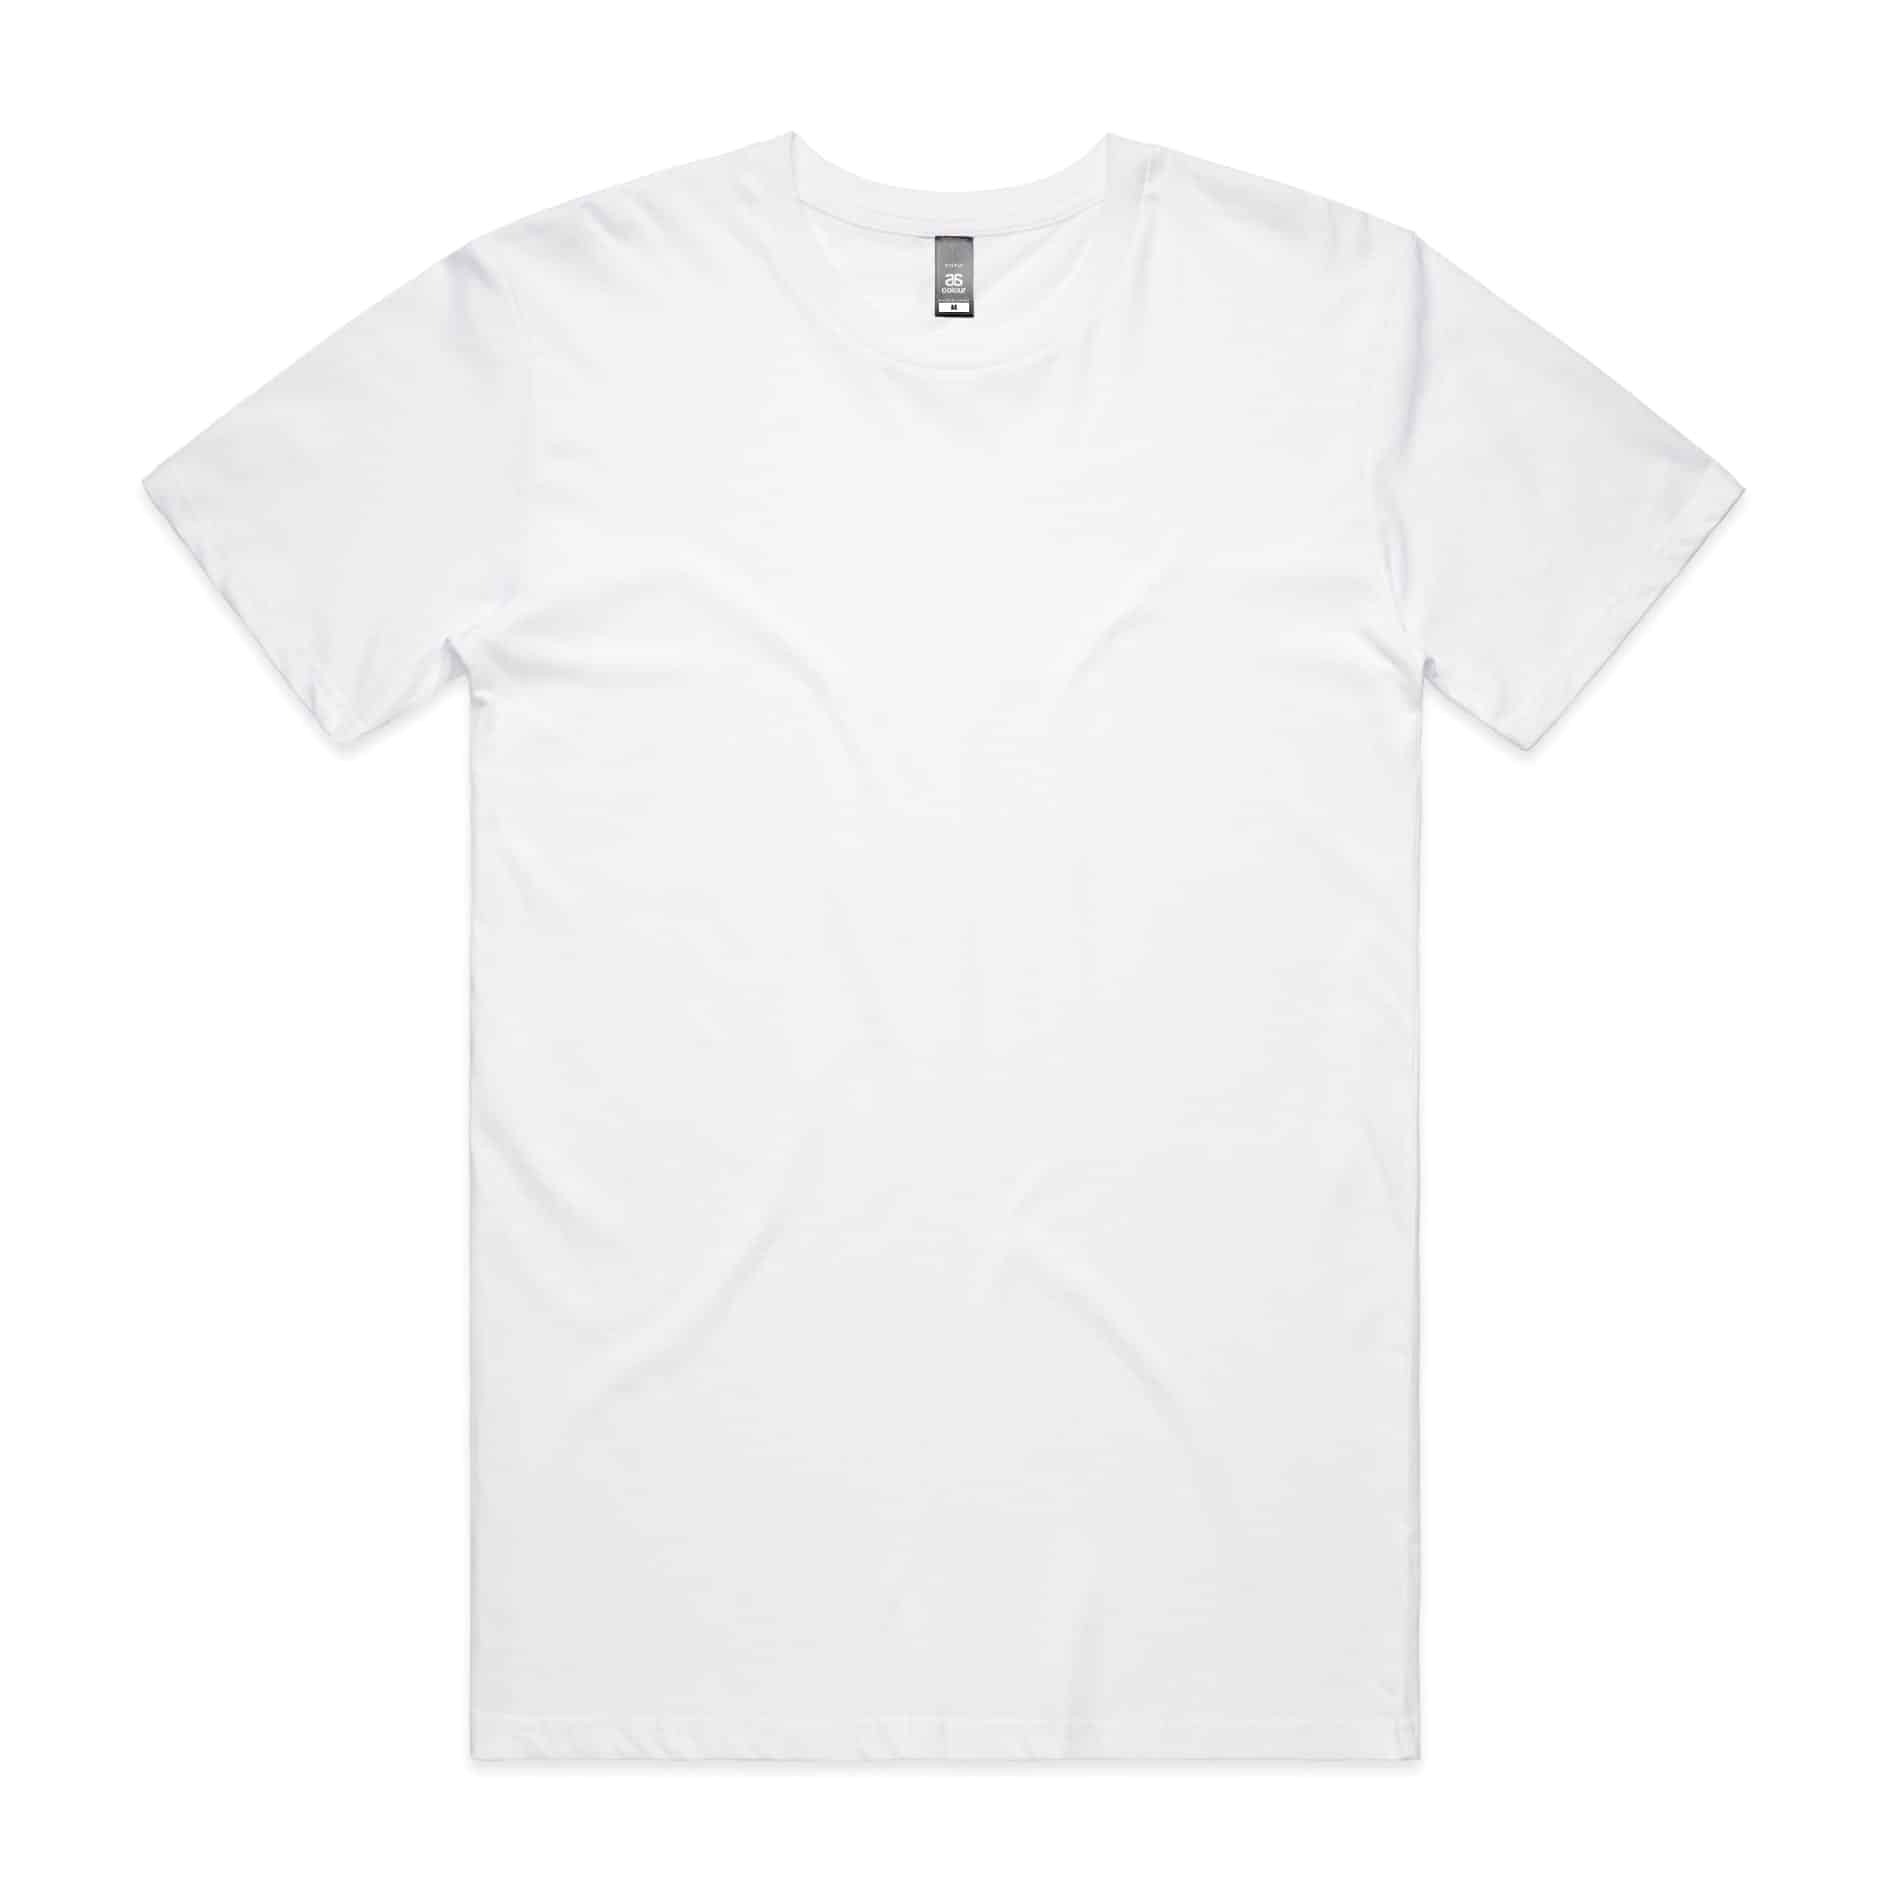 Sri Lanka T-Shirt